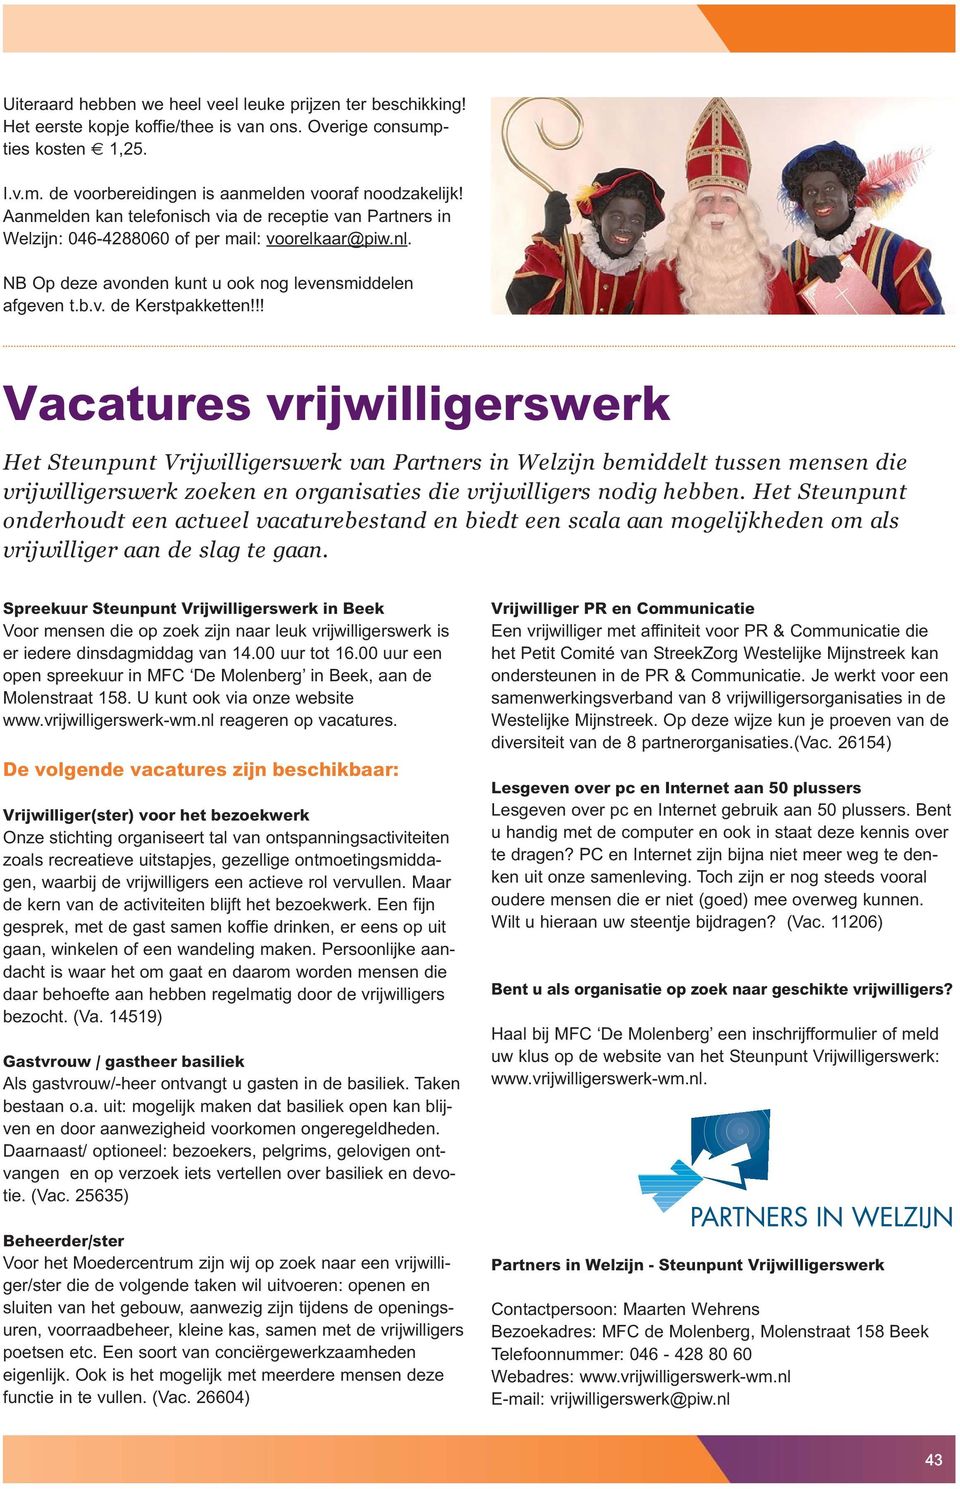 !! Vacatures vrijwilligerswerk Het Steunpunt Vrijwilligerswerk van Partners in Welzijn bemiddelt tussen mensen die vrijwilligerswerk zoeken en organisaties die vrijwilligers nodig hebben.